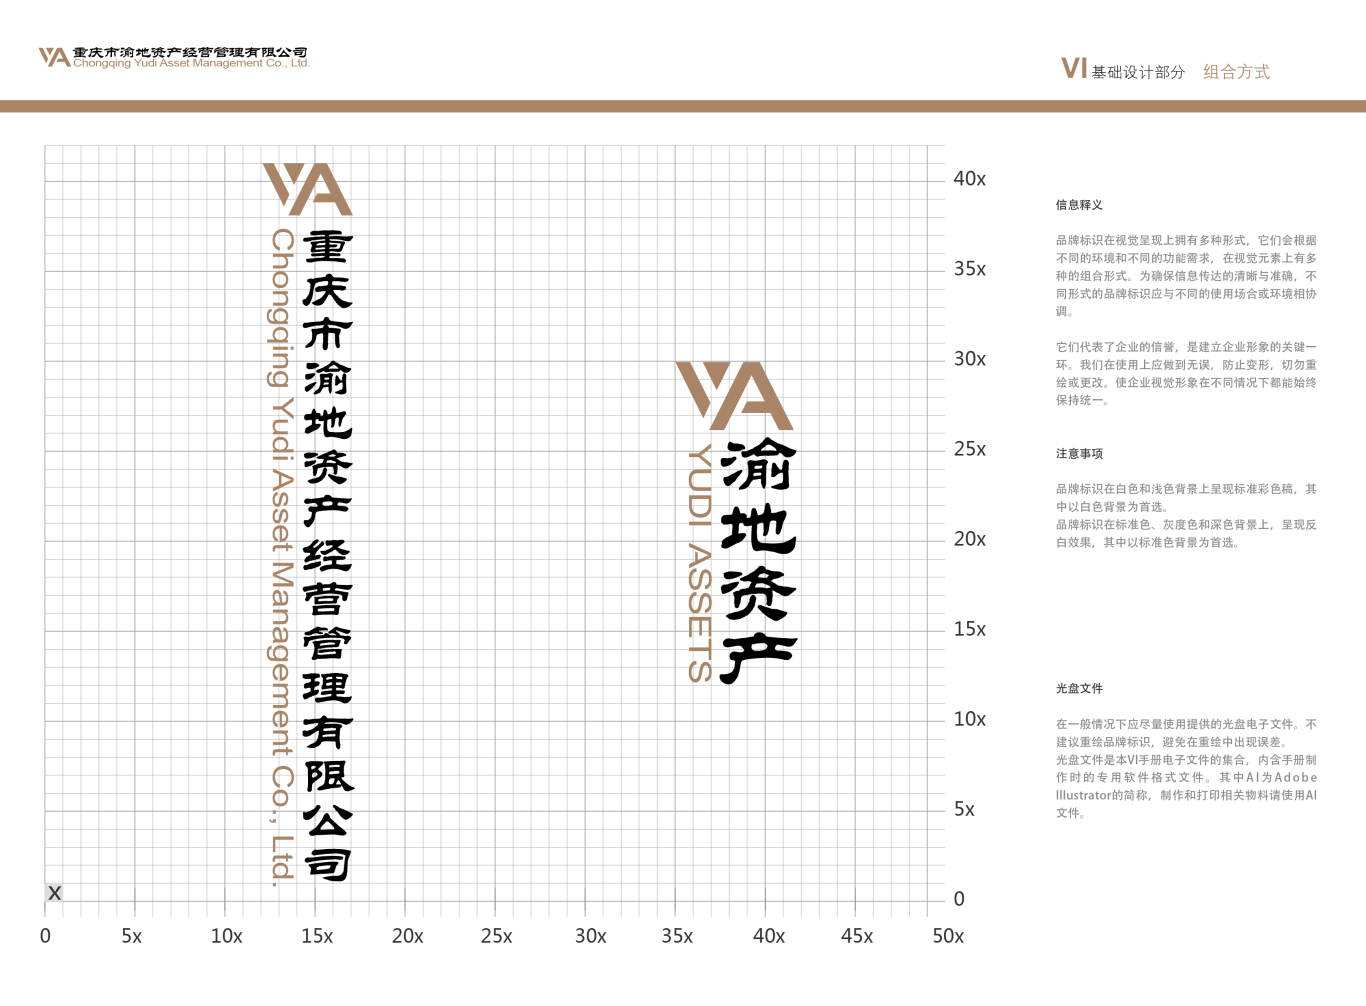 重庆市渝地资产经营管理有限公司vi设计图14